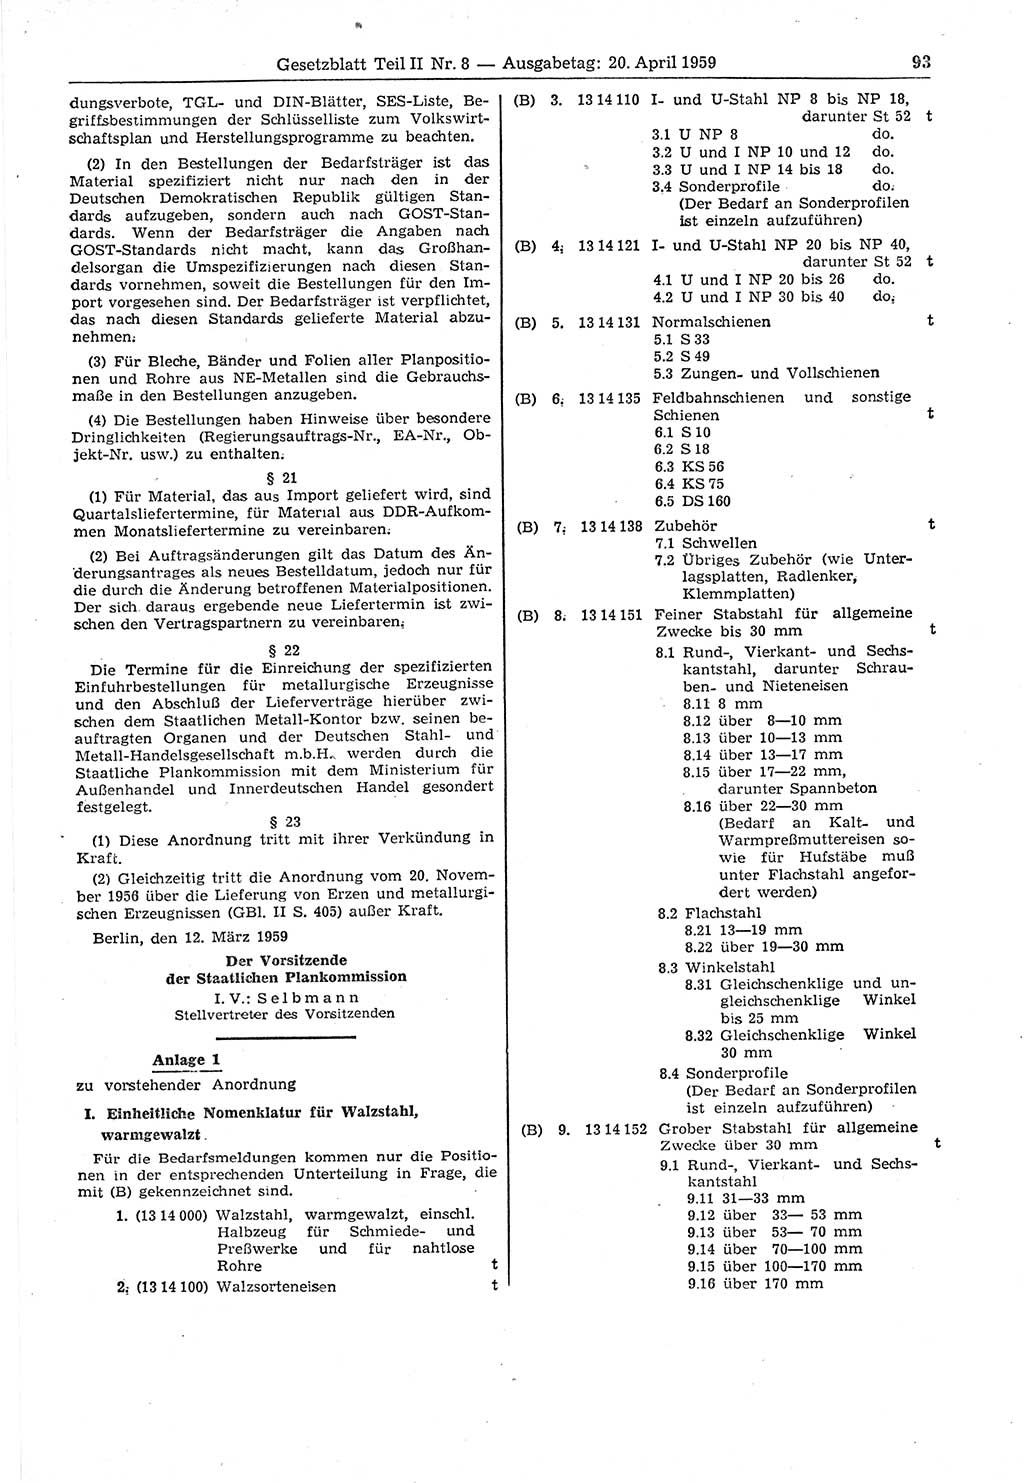 Gesetzblatt (GBl.) der Deutschen Demokratischen Republik (DDR) Teil ⅠⅠ 1959, Seite 93 (GBl. DDR ⅠⅠ 1959, S. 93)